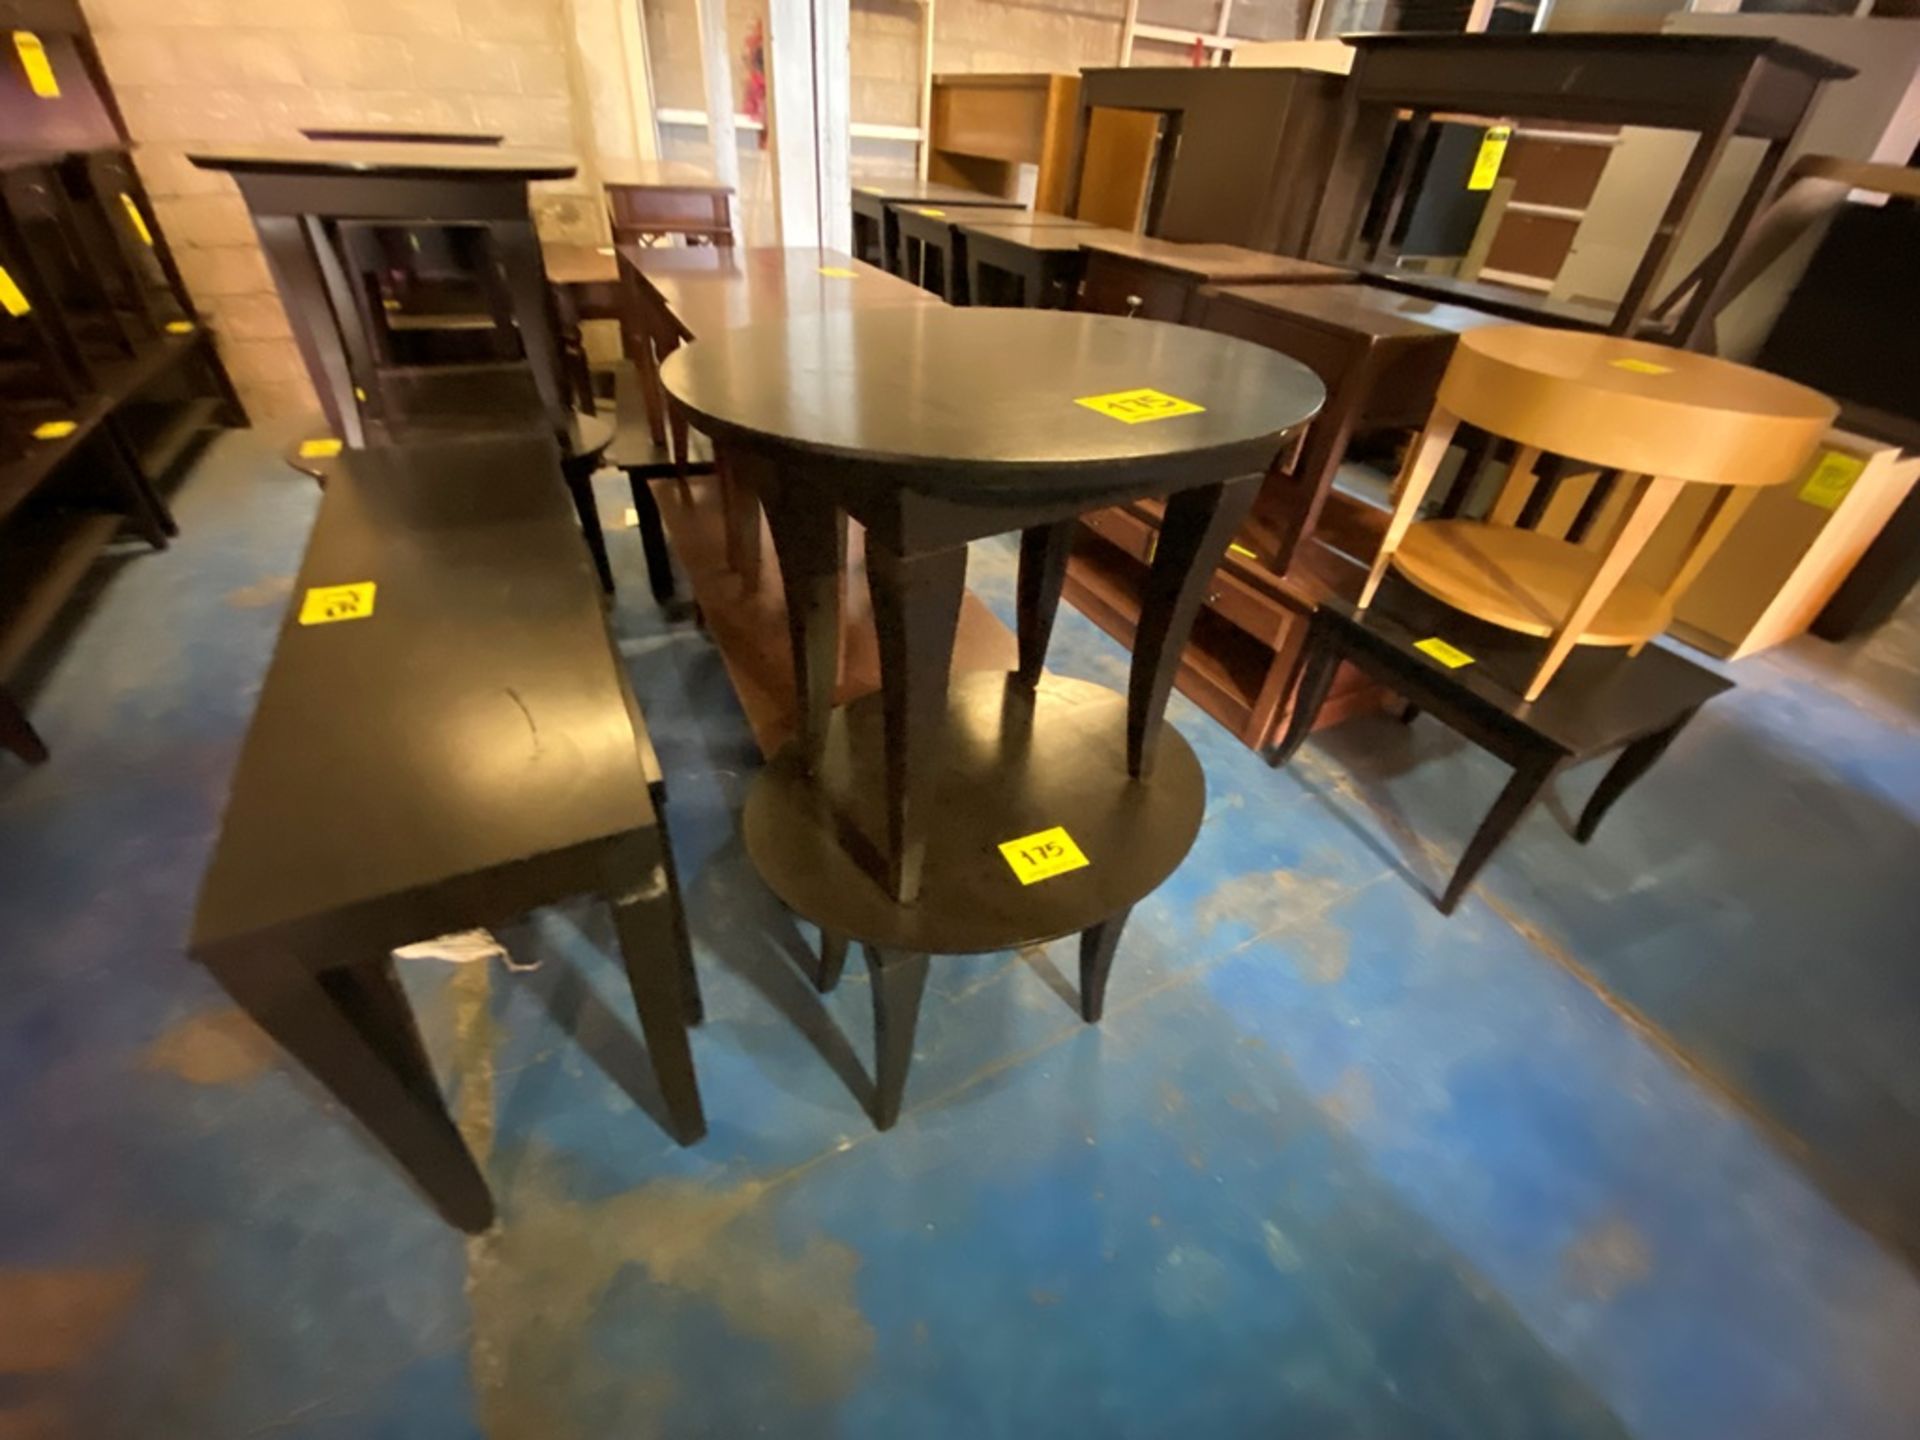 Lote Conformado por 2 mesas, Contiene; 1 Mesa Tipo Esquinero Ovalada de Madera Color Café 70x55x58 - Image 3 of 13